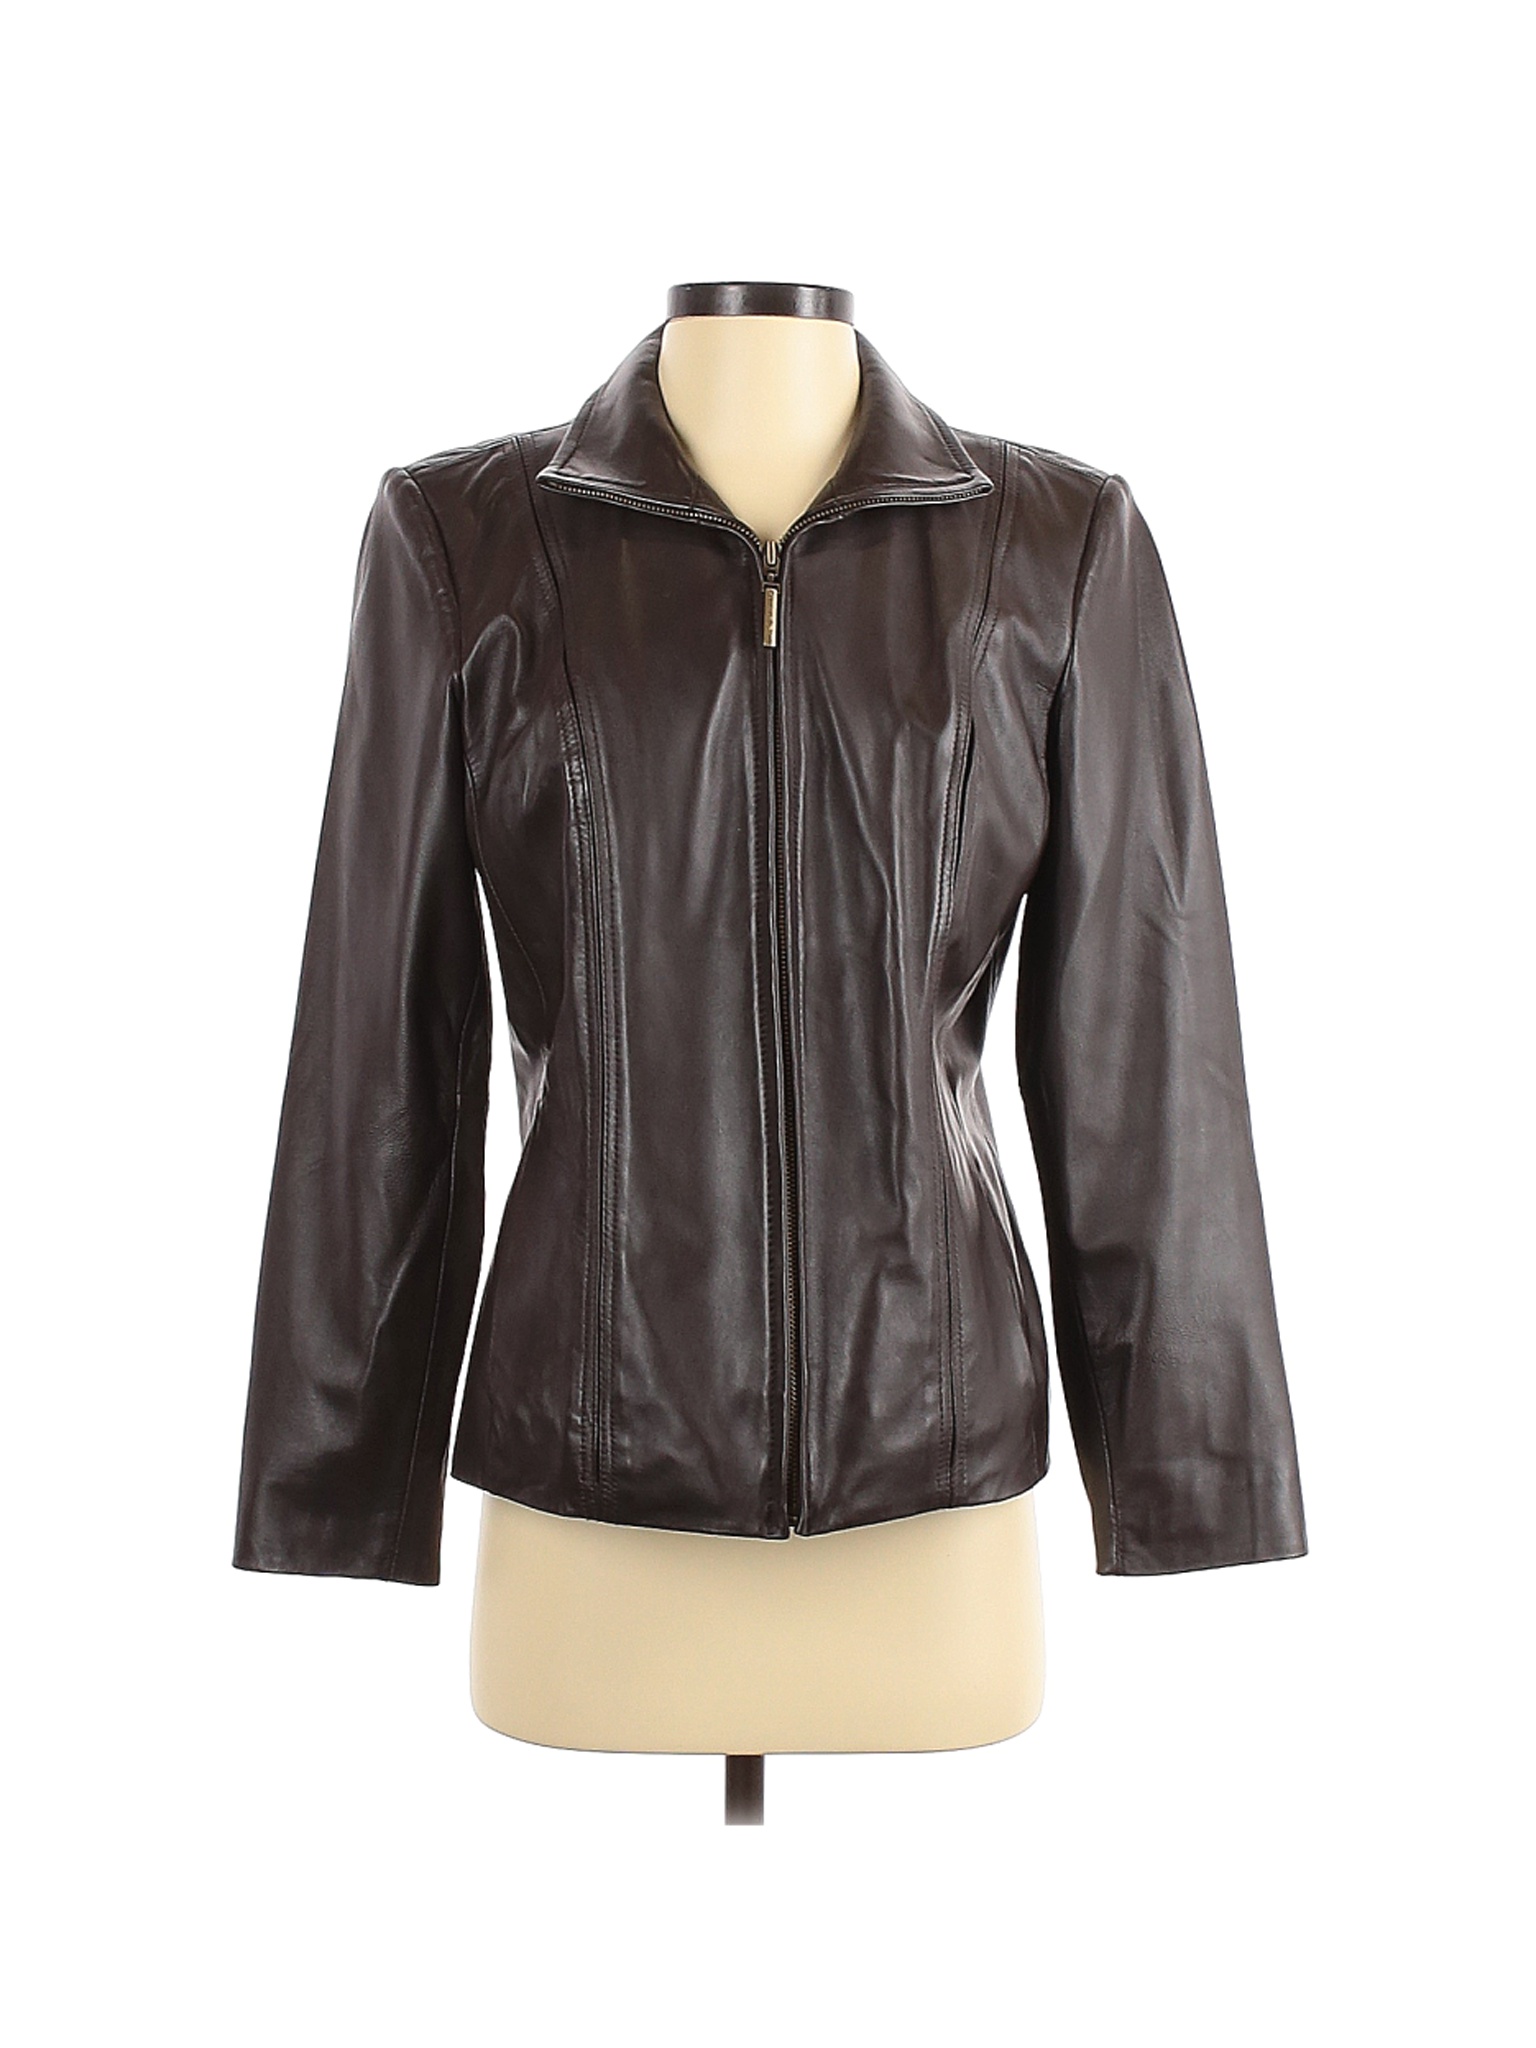 Preston & York Women Brown Jacket S | eBay